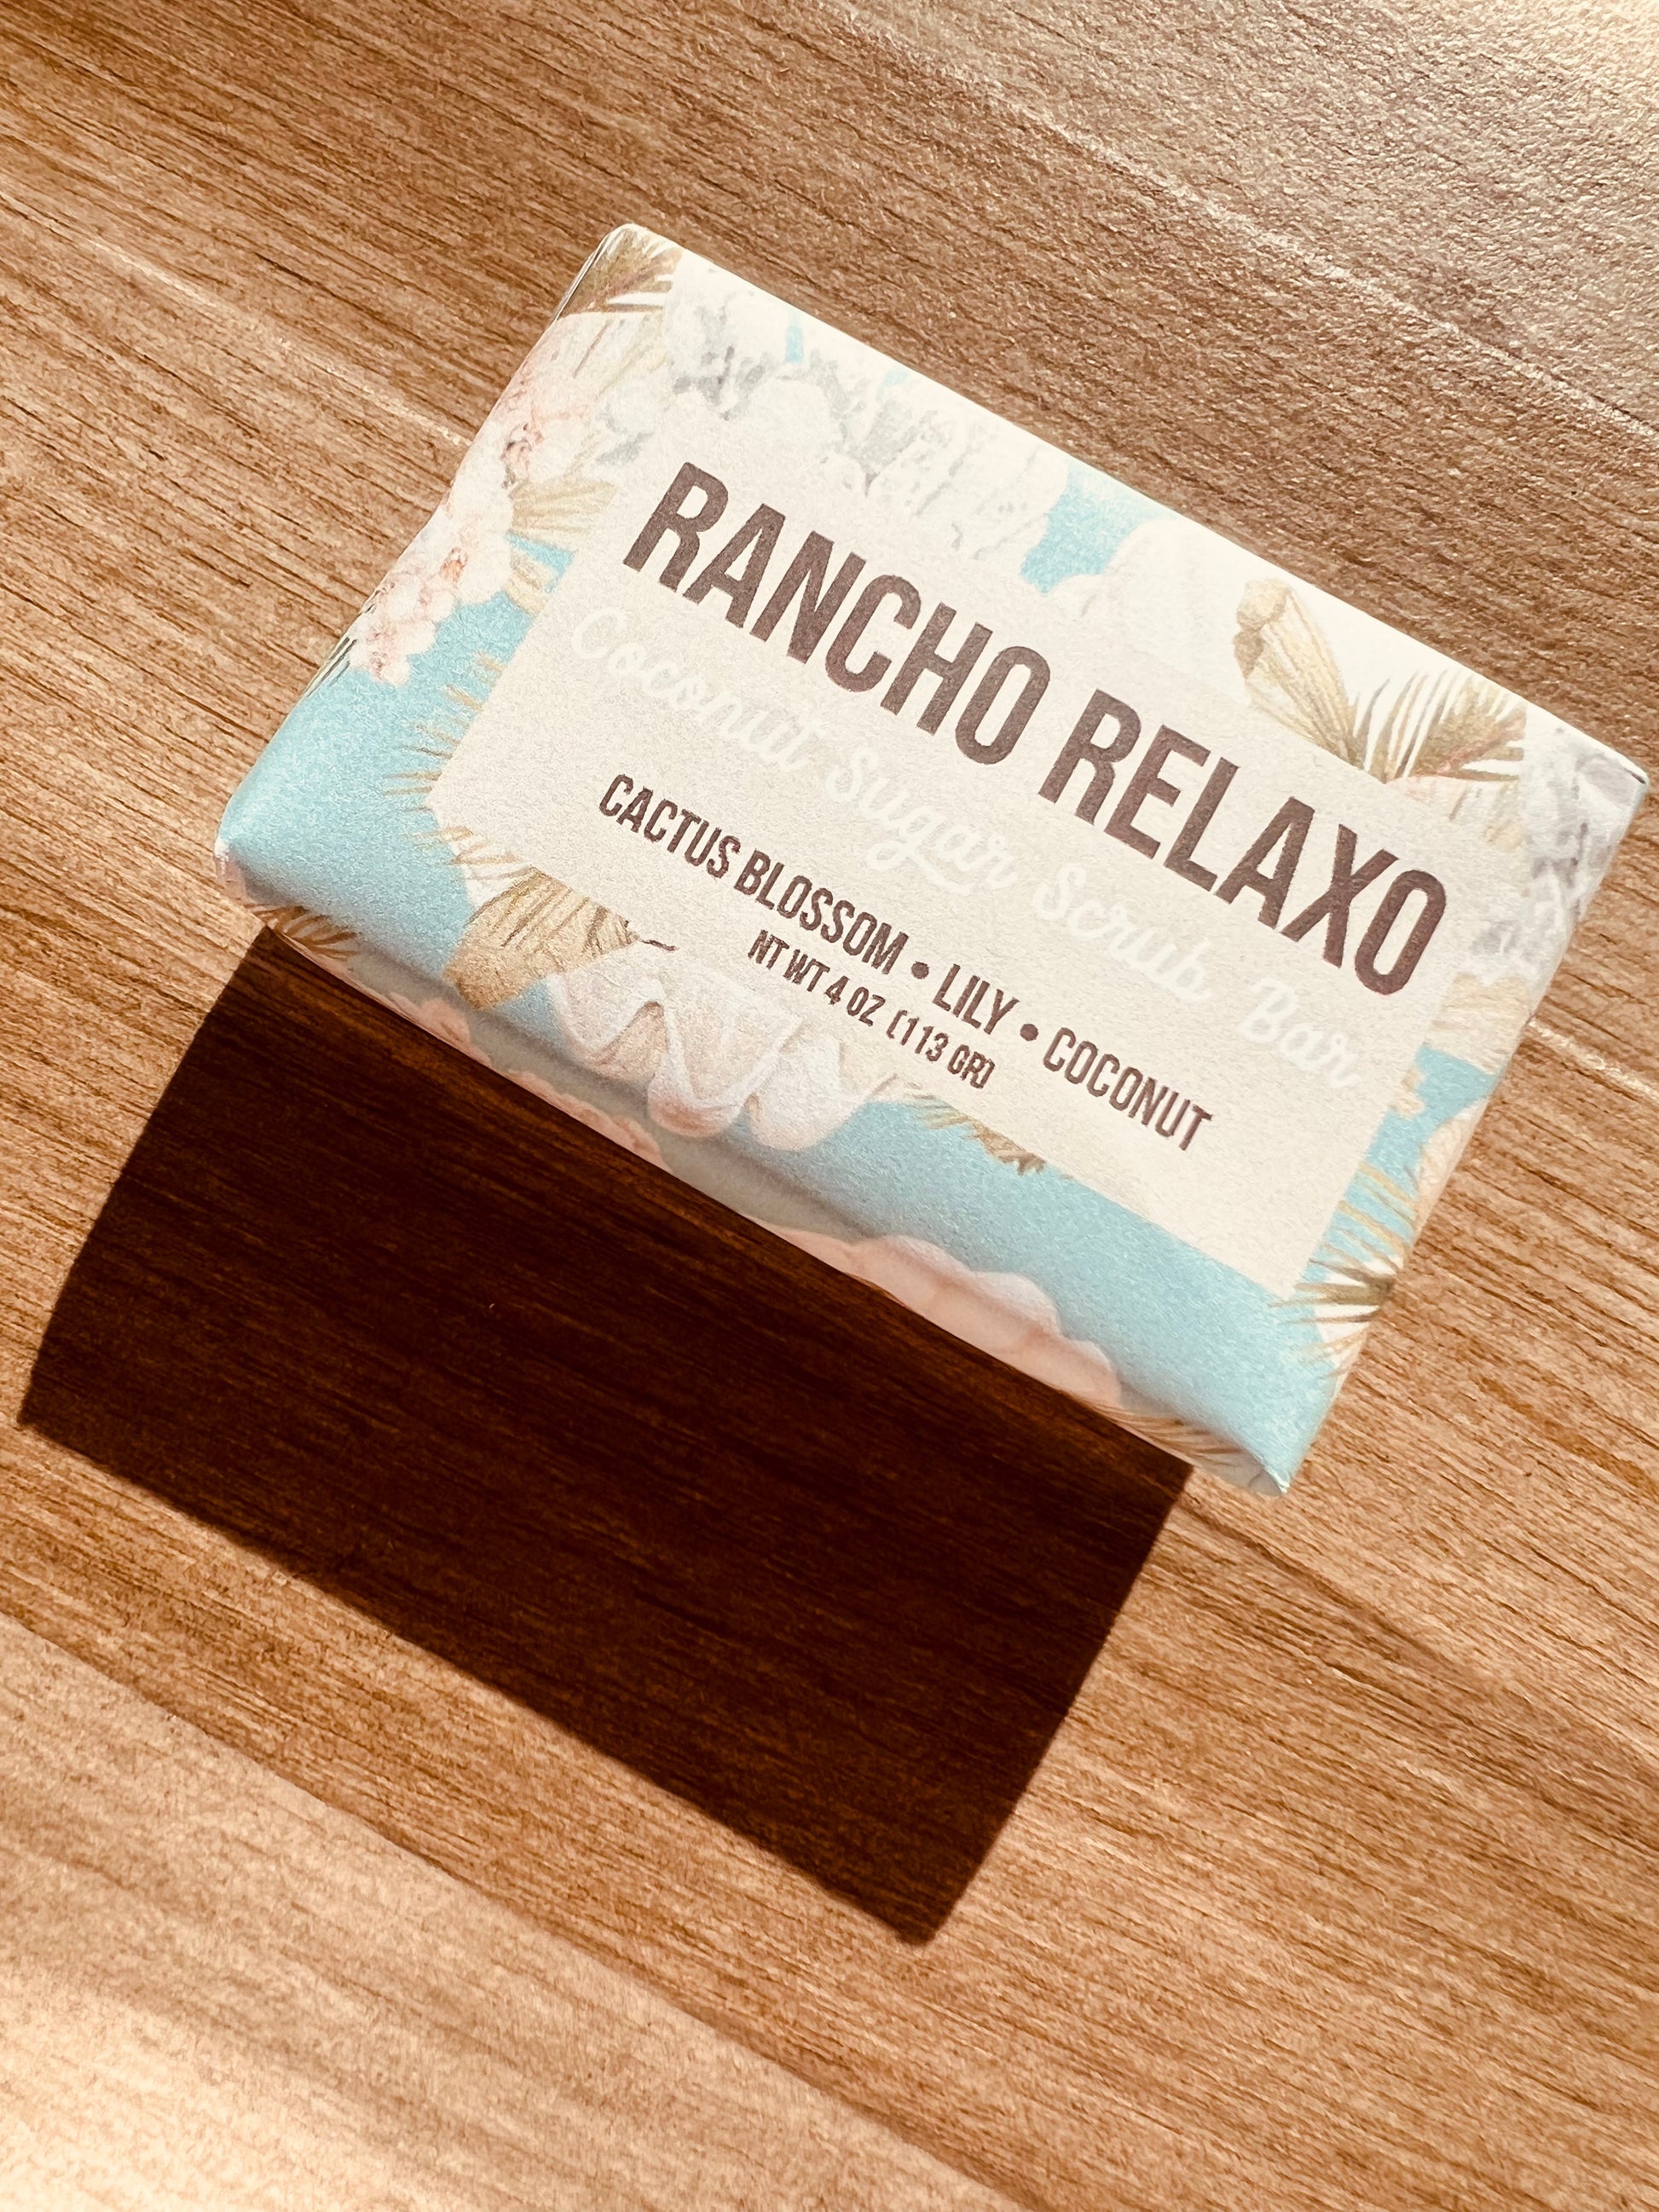 Soap Bar - Rancho Relaxo